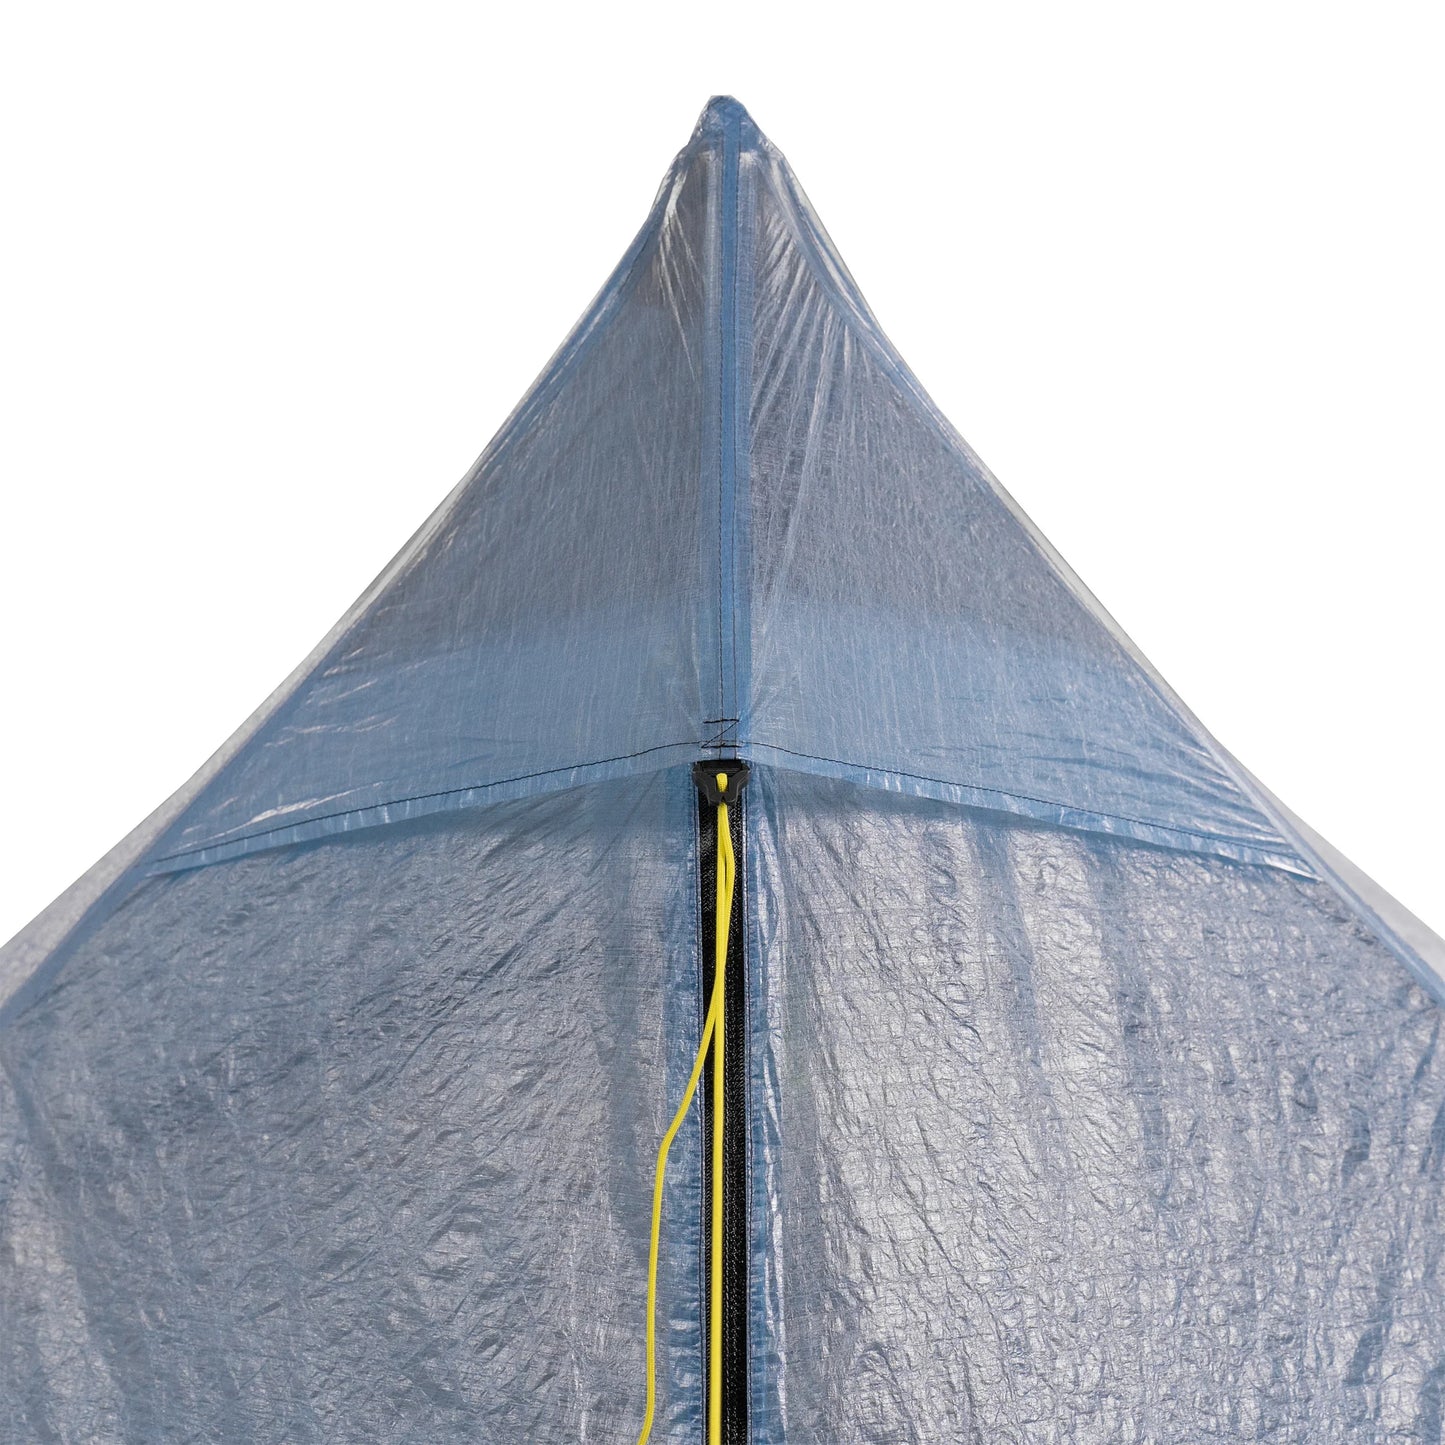 Zpacks - Duplex Zip Tent